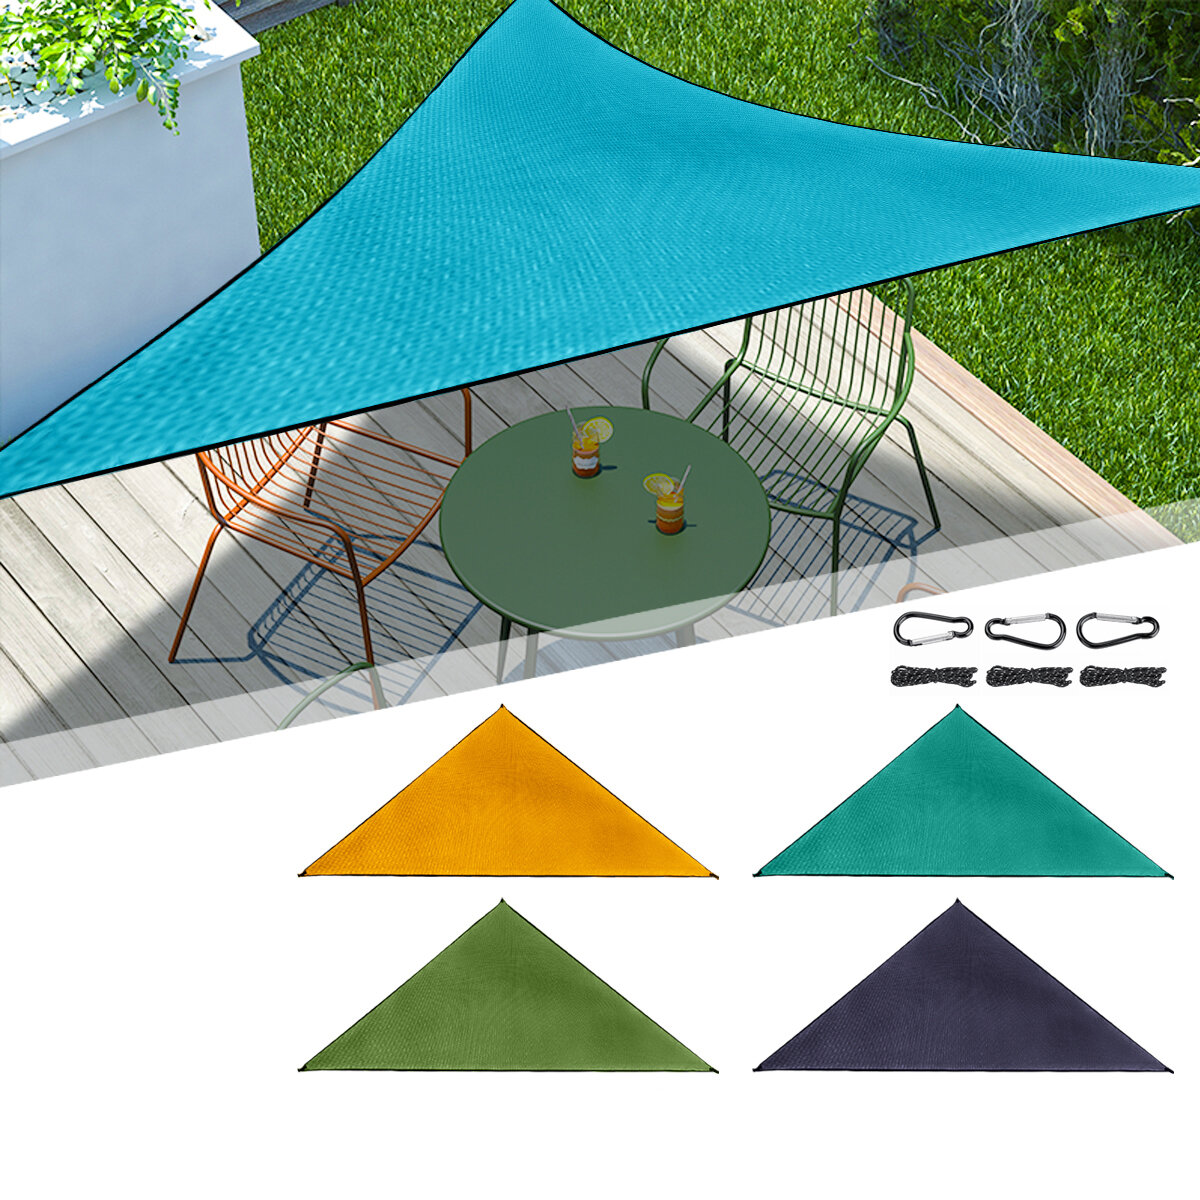 Toldo de sombra impermeável de 6x6x6m e à prova de UV, ideal para piscinas, praias, jardins e pátios.